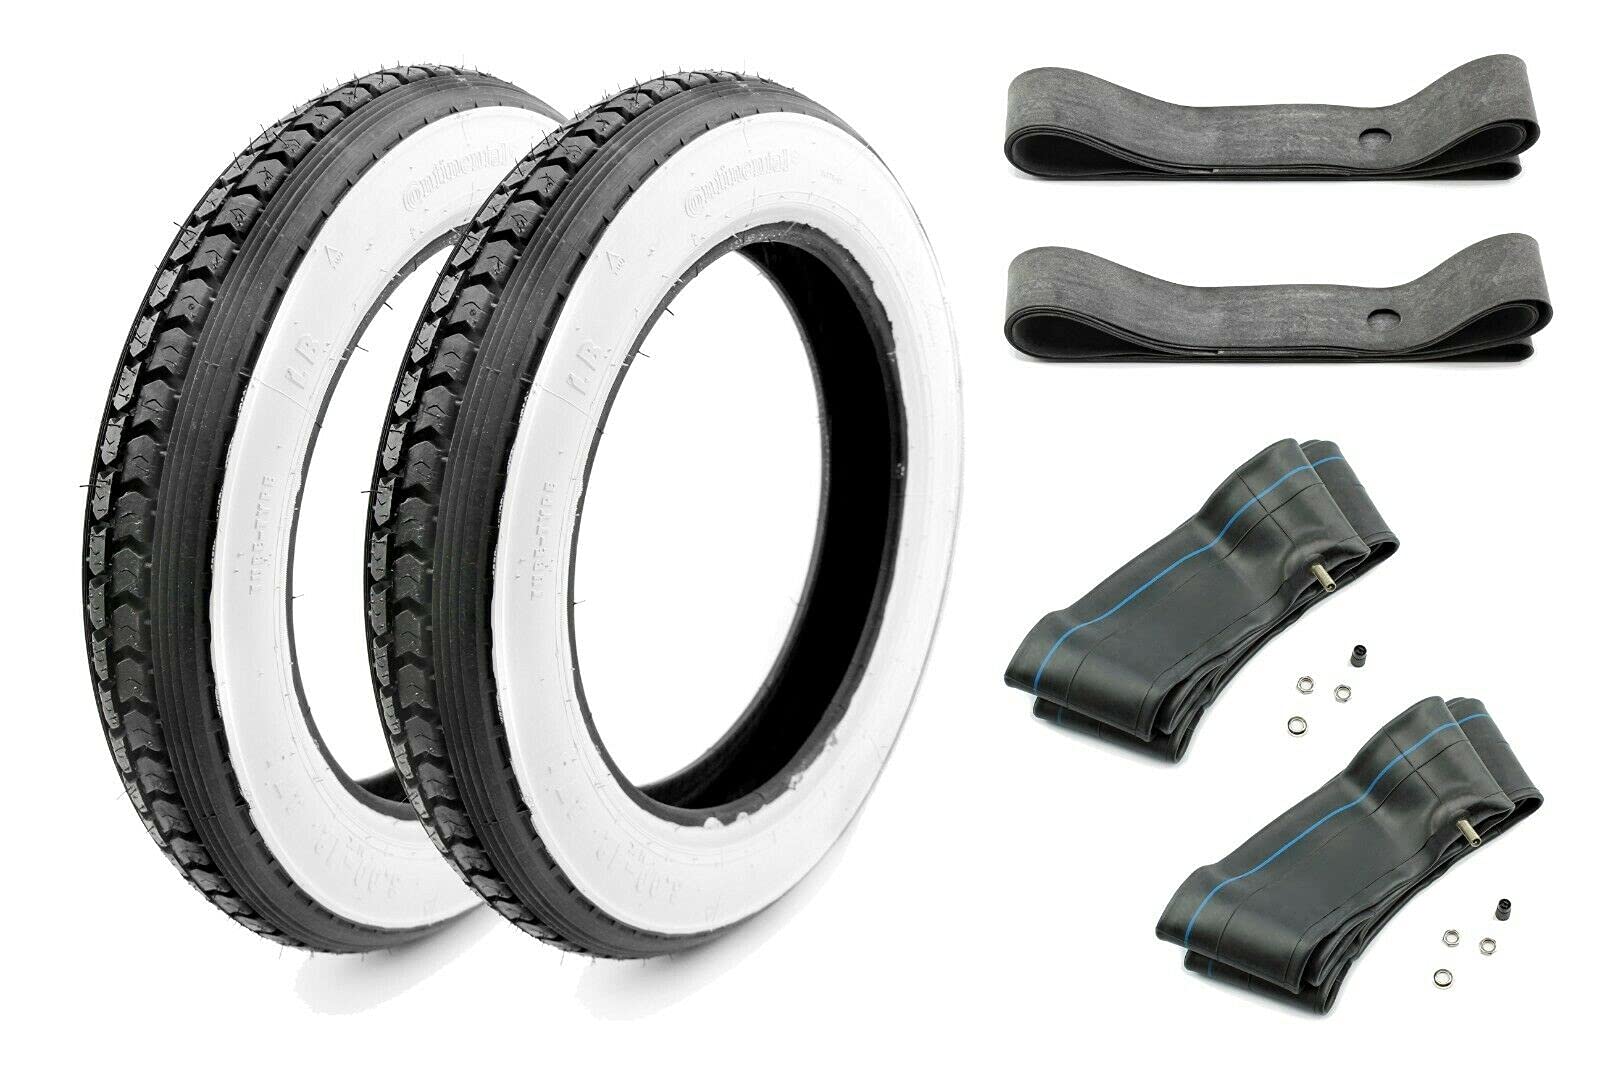 Komplett-Set 2x Continental Weißwand Reifen 3,00 x 12 mit Schlauch und Felgenband, 6-teilig für Simson SR50 und SR80 Roller von BISOMO